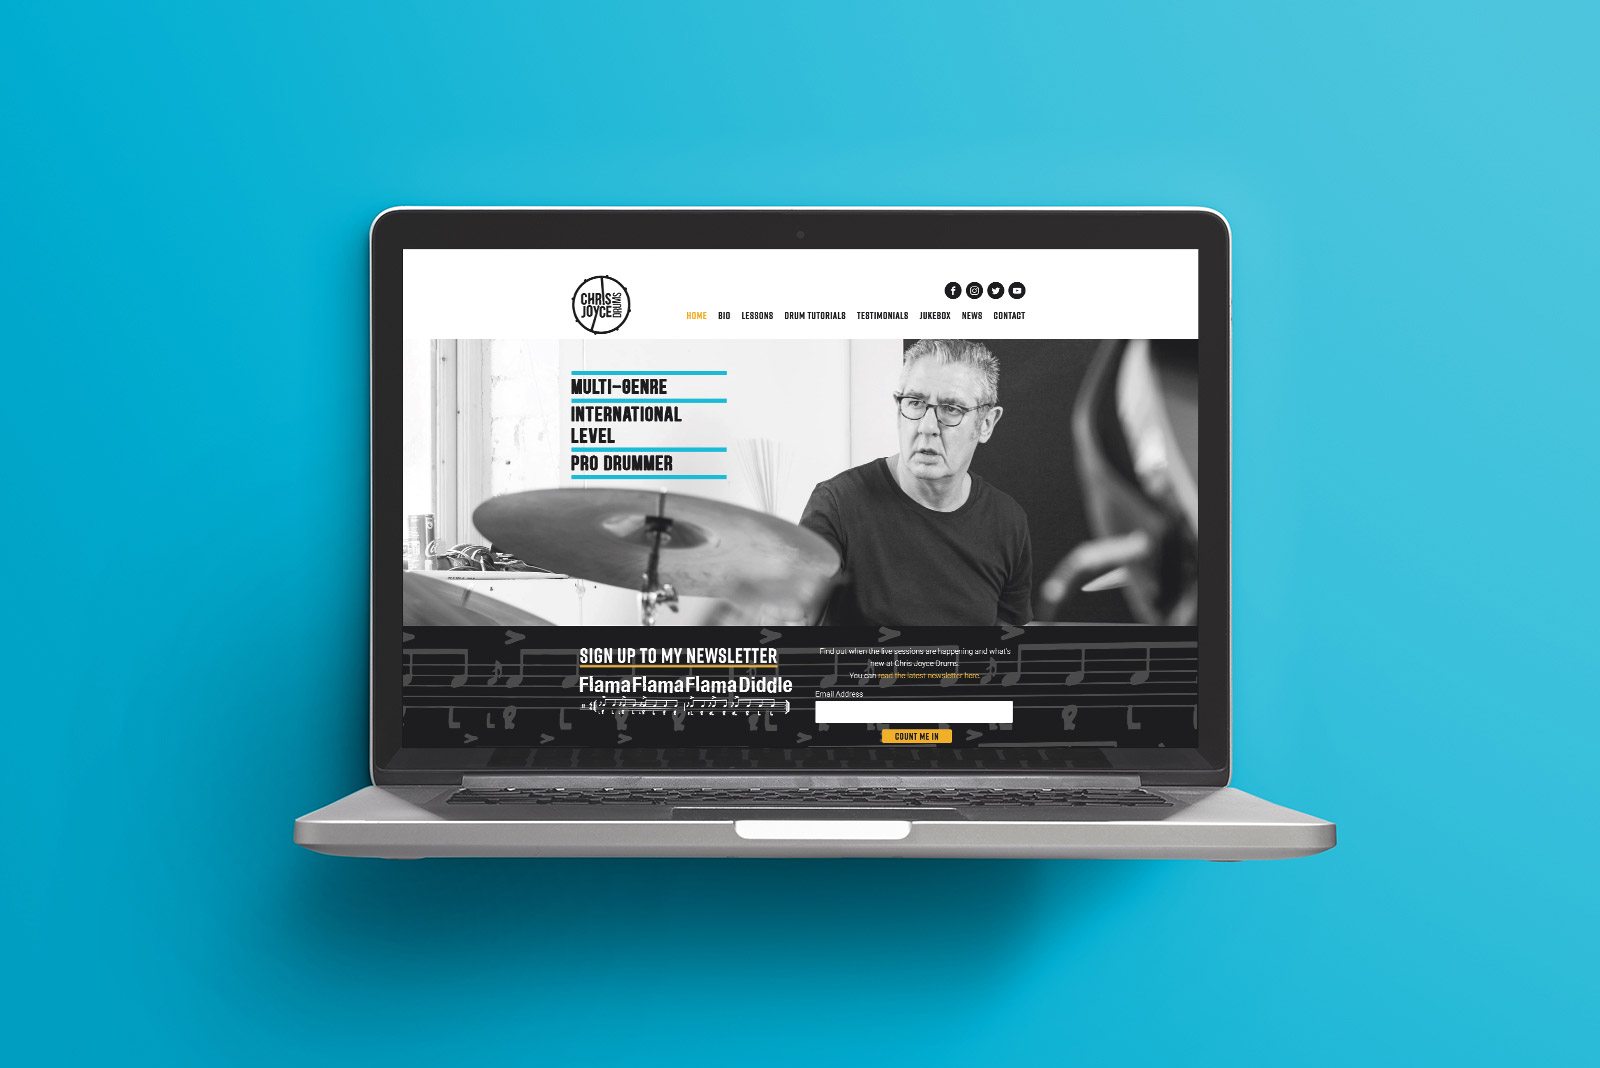 Chris Joyce Drums website